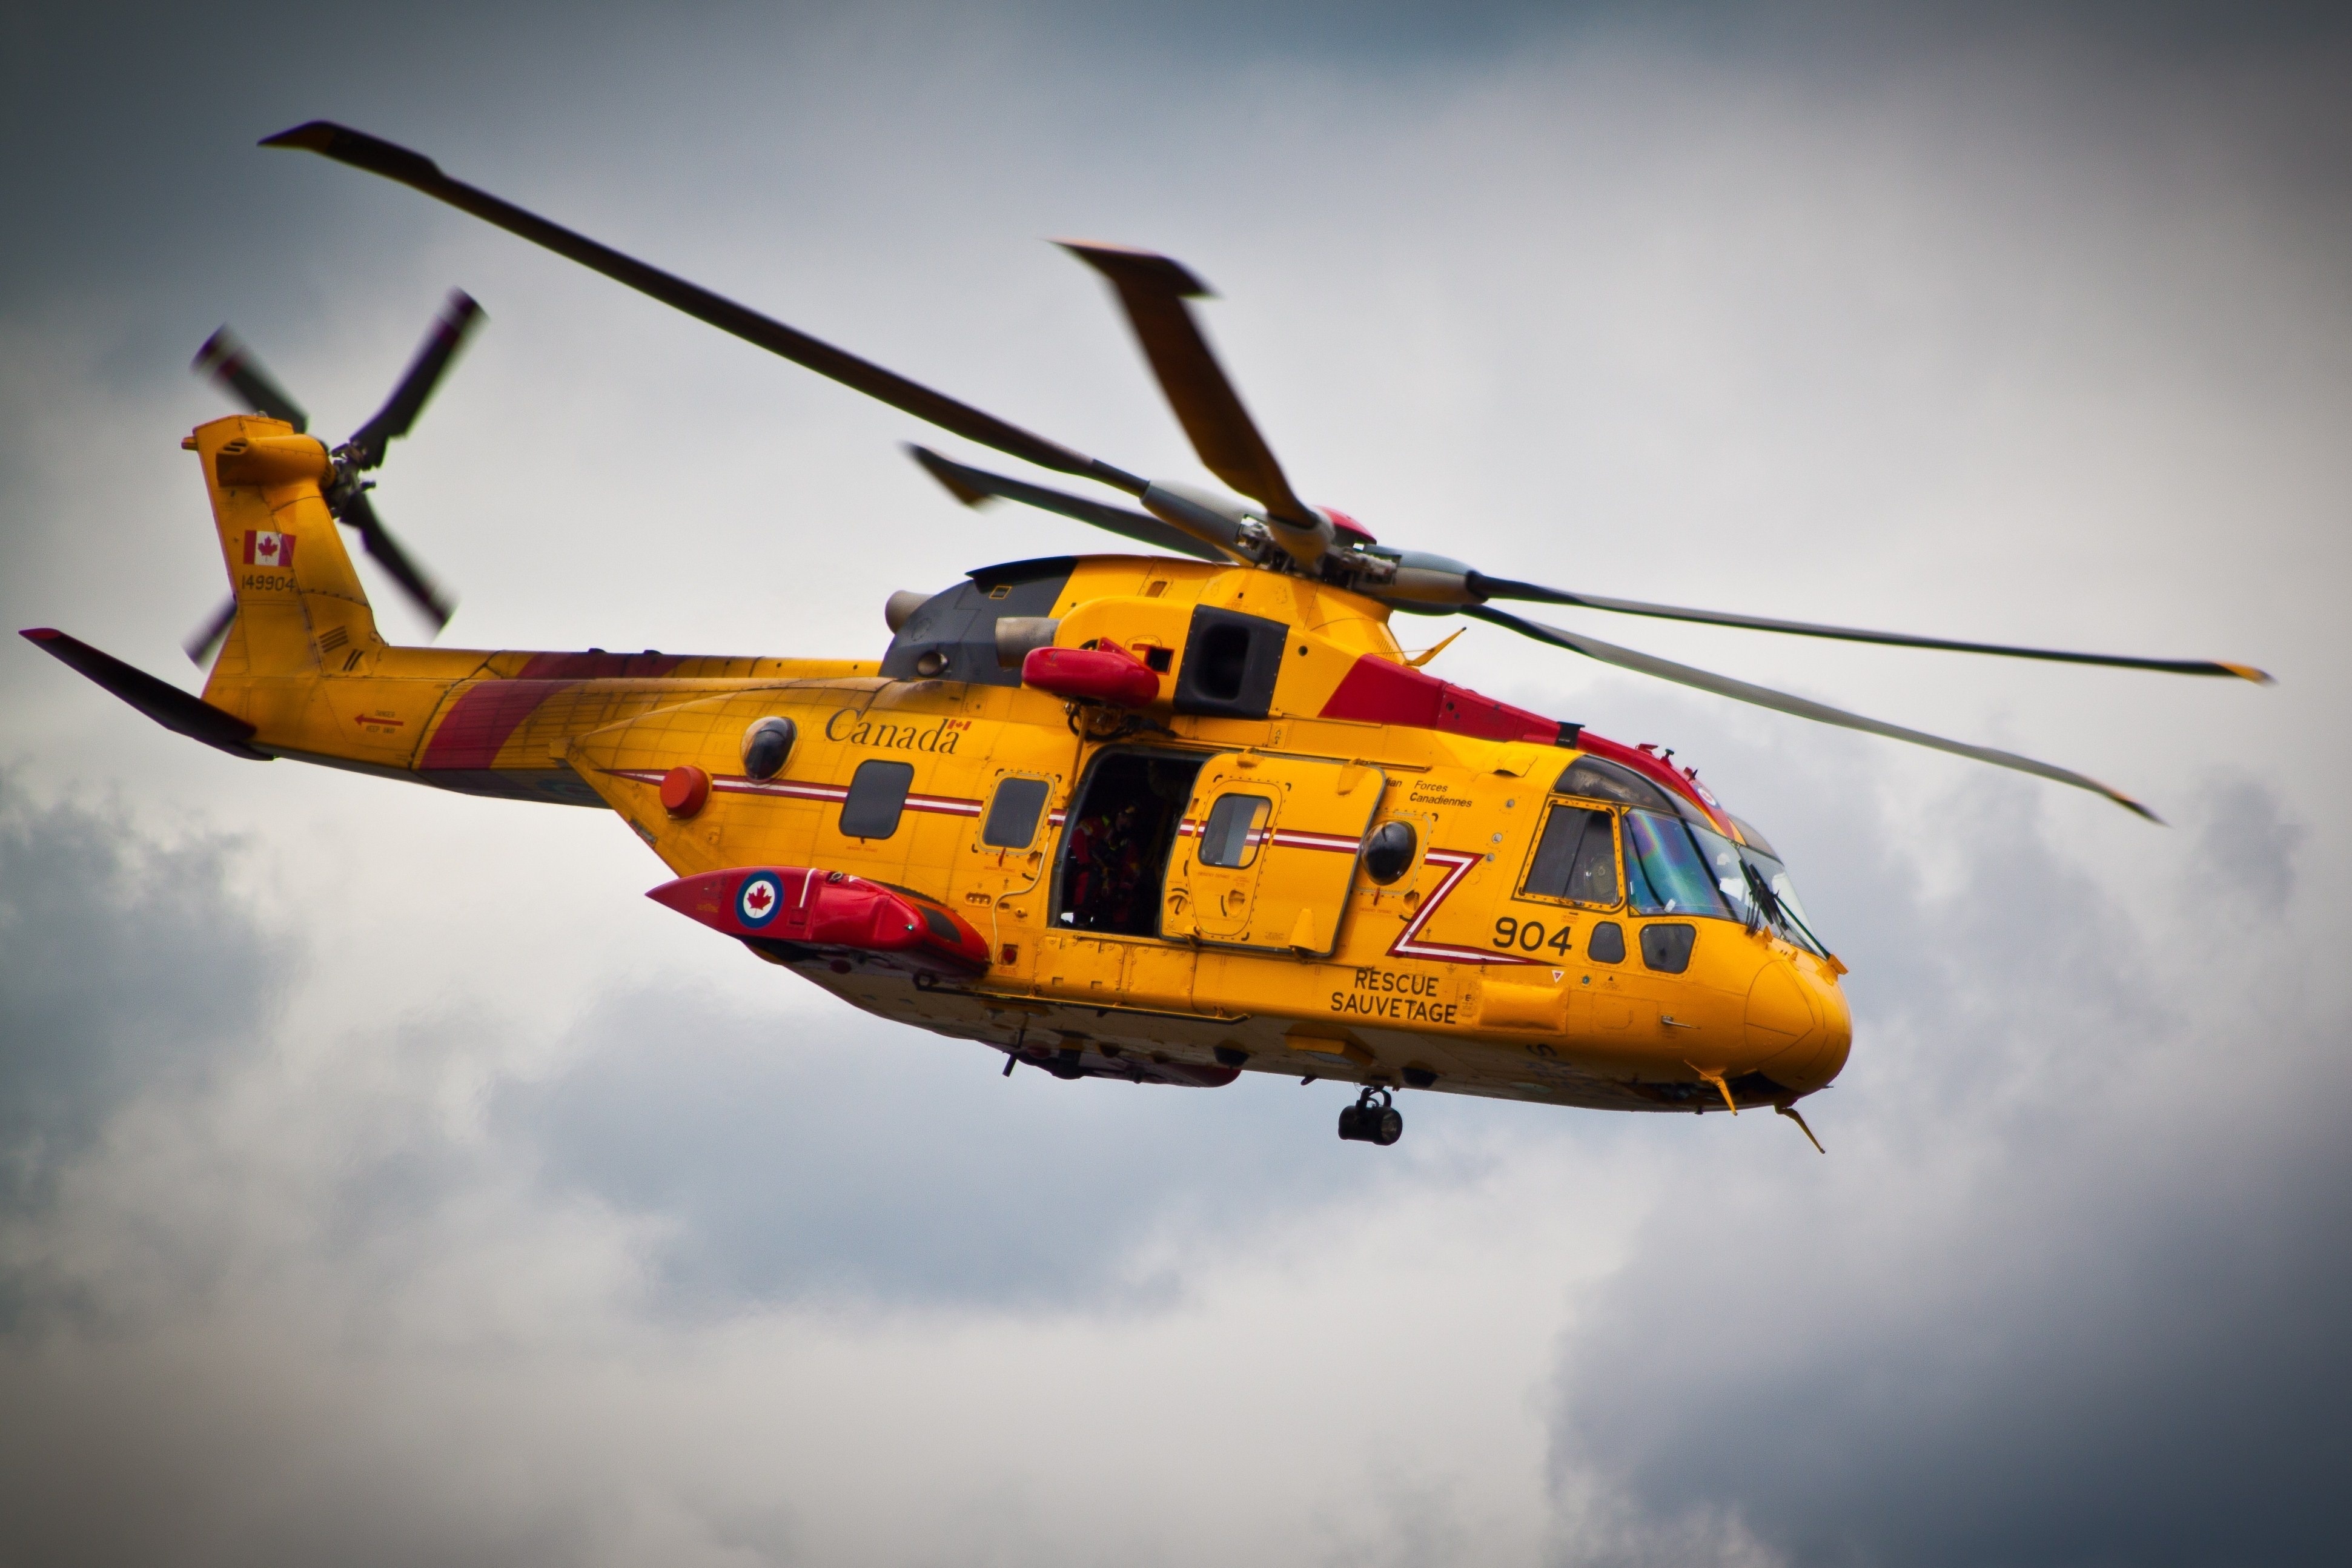 Вертолеты вчера. Вертолеты Eurocopter Tiger. Поисково спасательный вертолет as 565 MB Panther. So.1221 Djinn вертолет. Желтый вертолет.